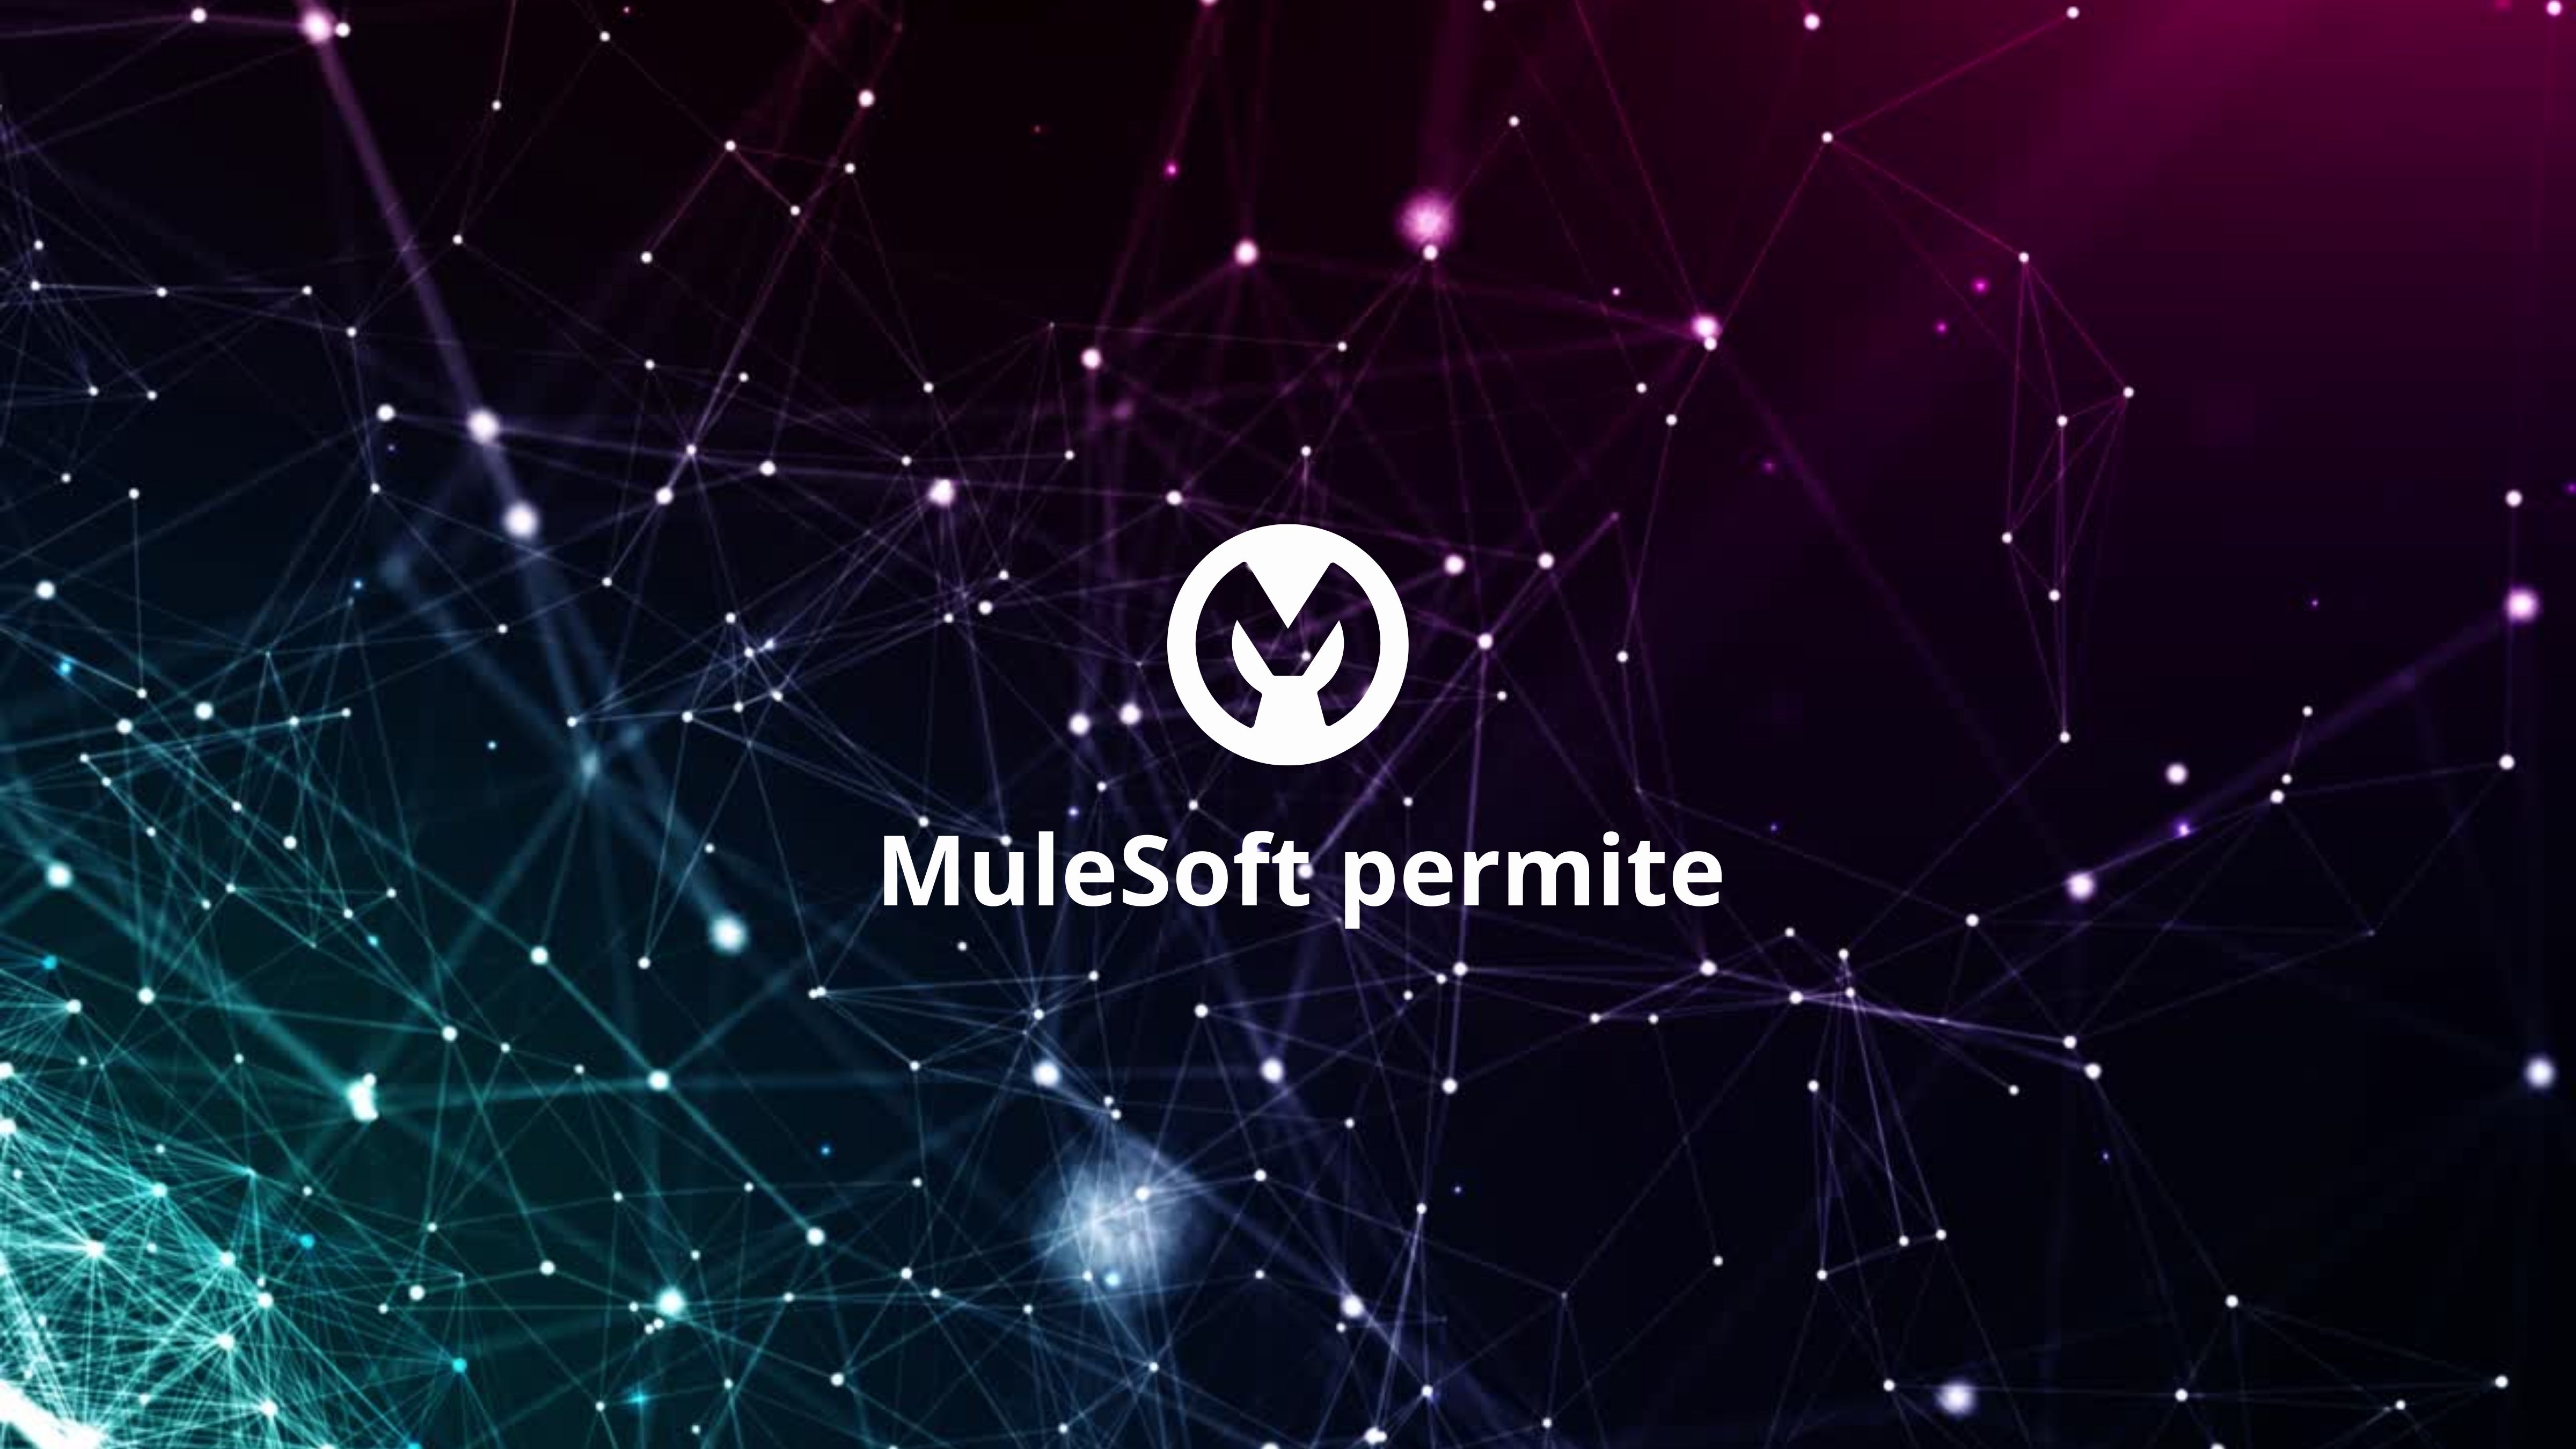 ¿Sabes que ofrece MuleSoft?